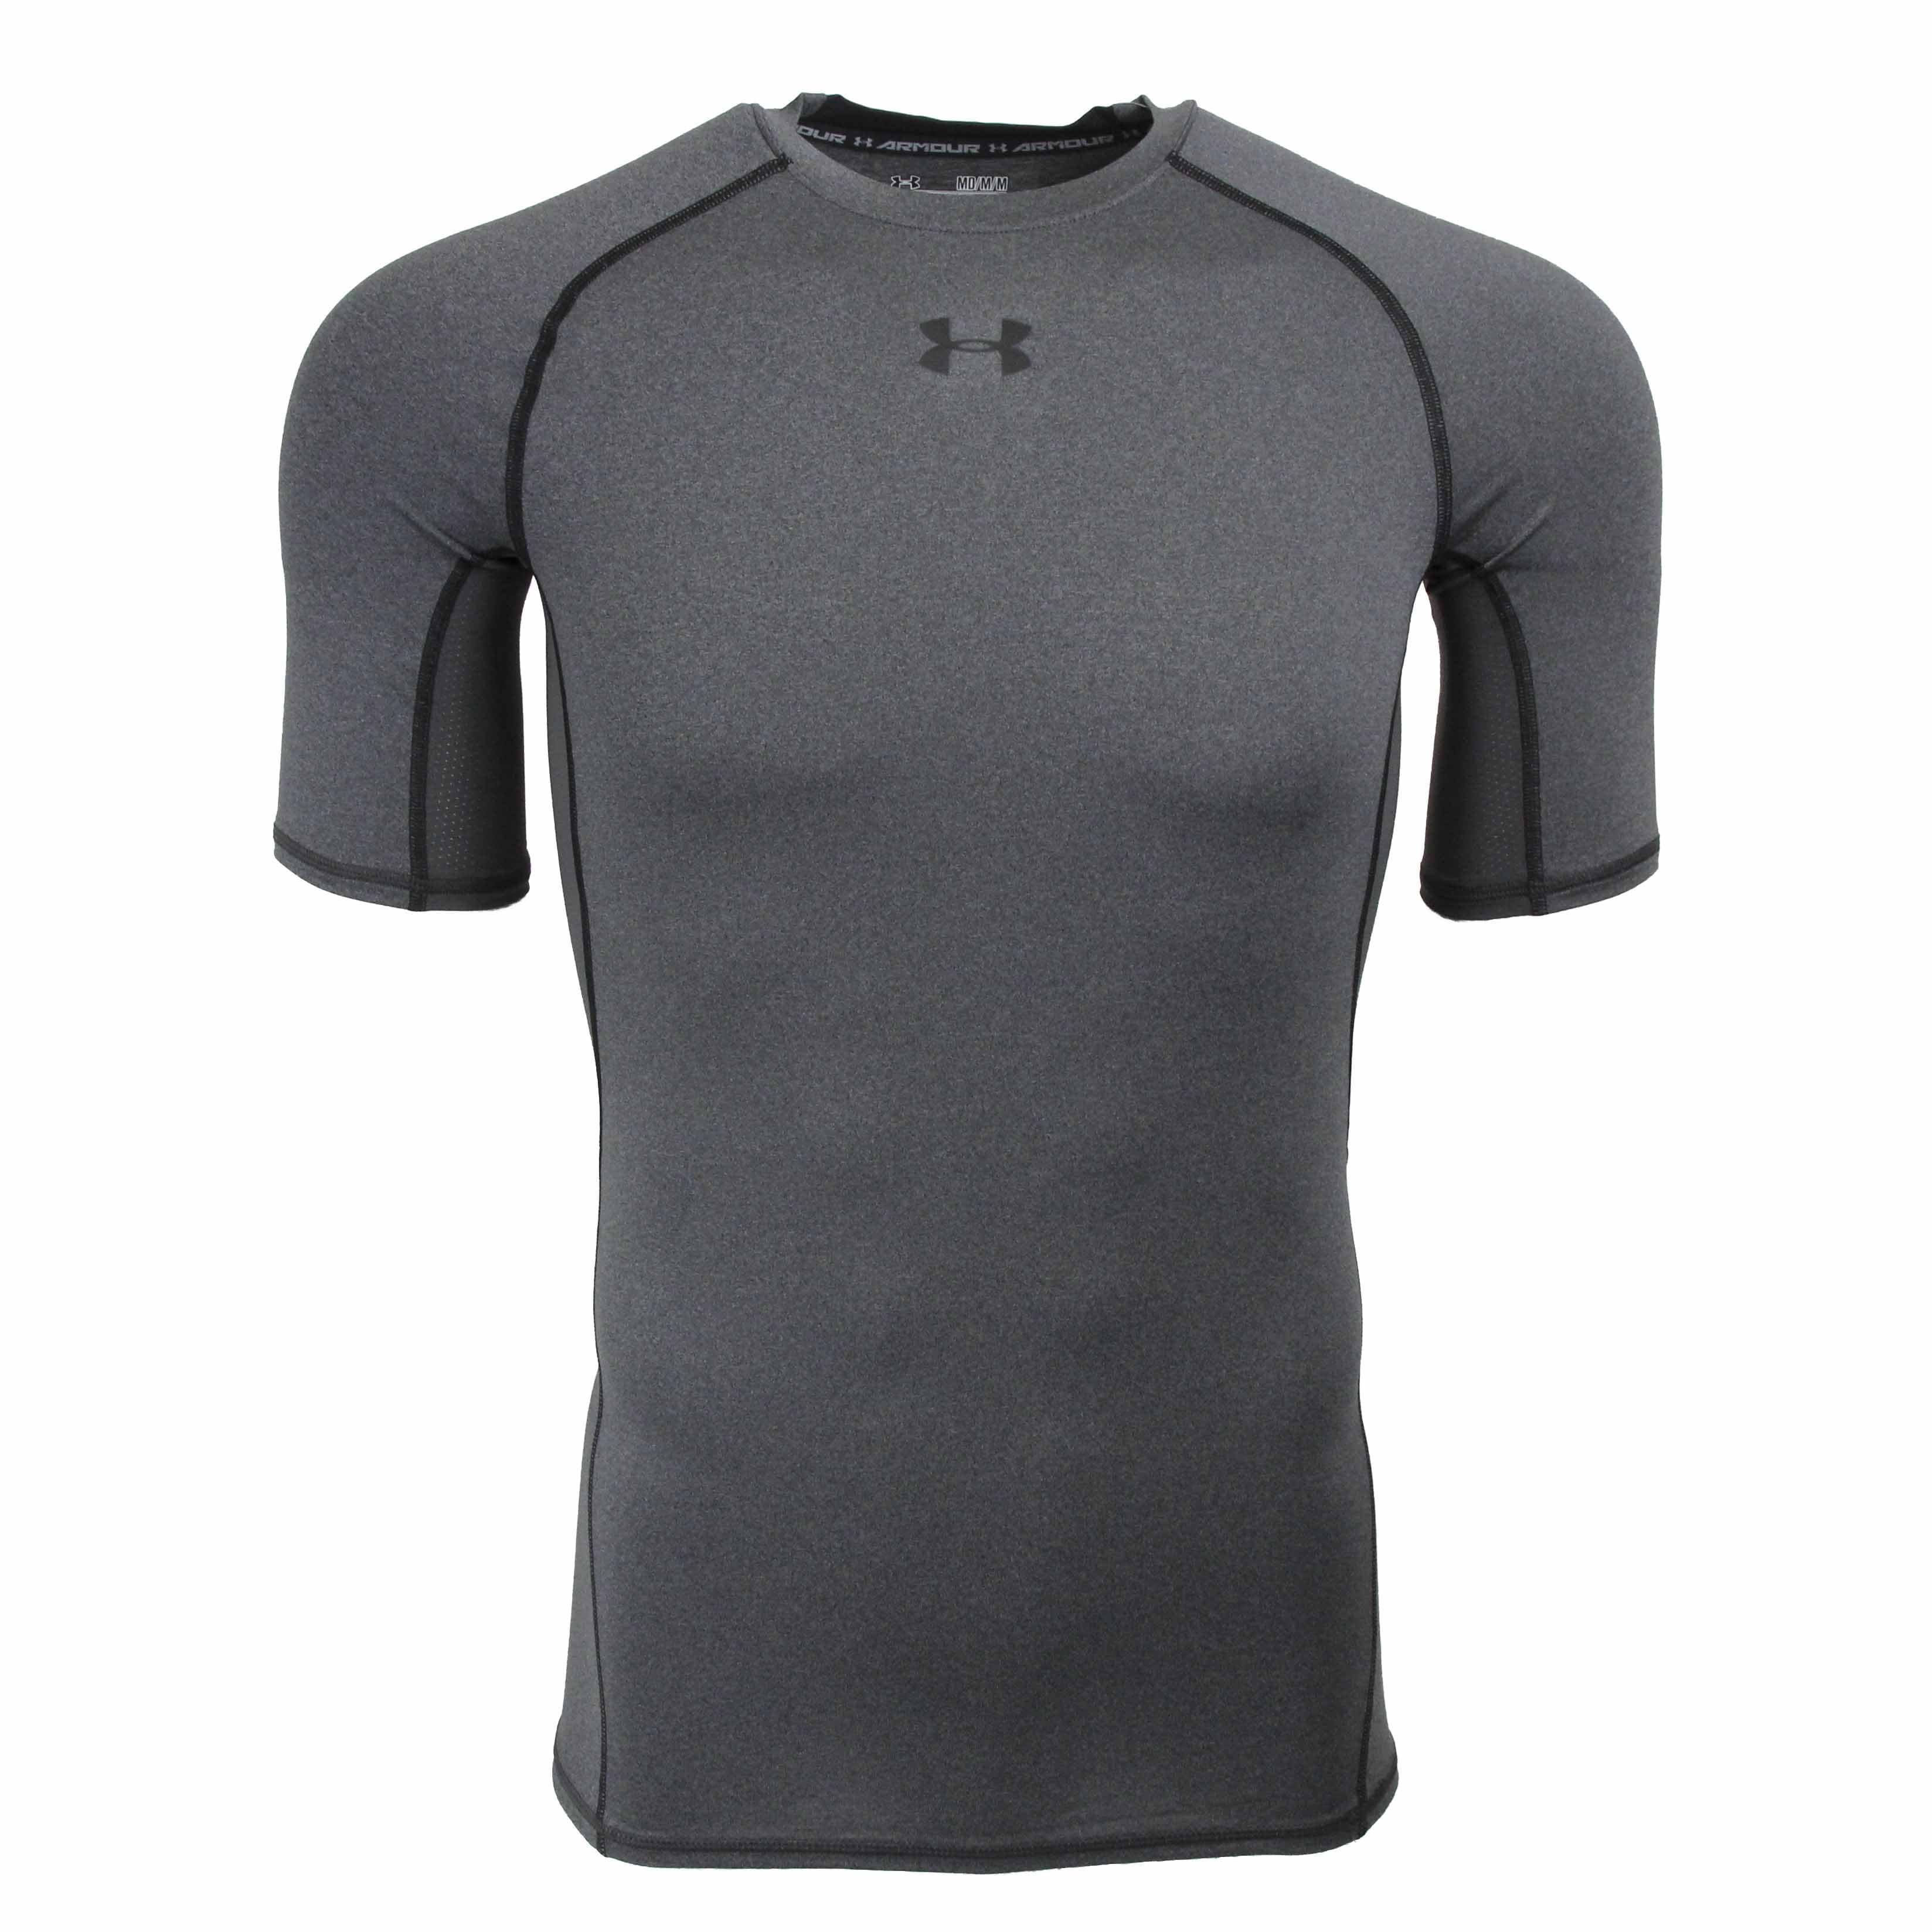 Under Armour Men's HeatGear Compression T-Shirt - Walmart.com